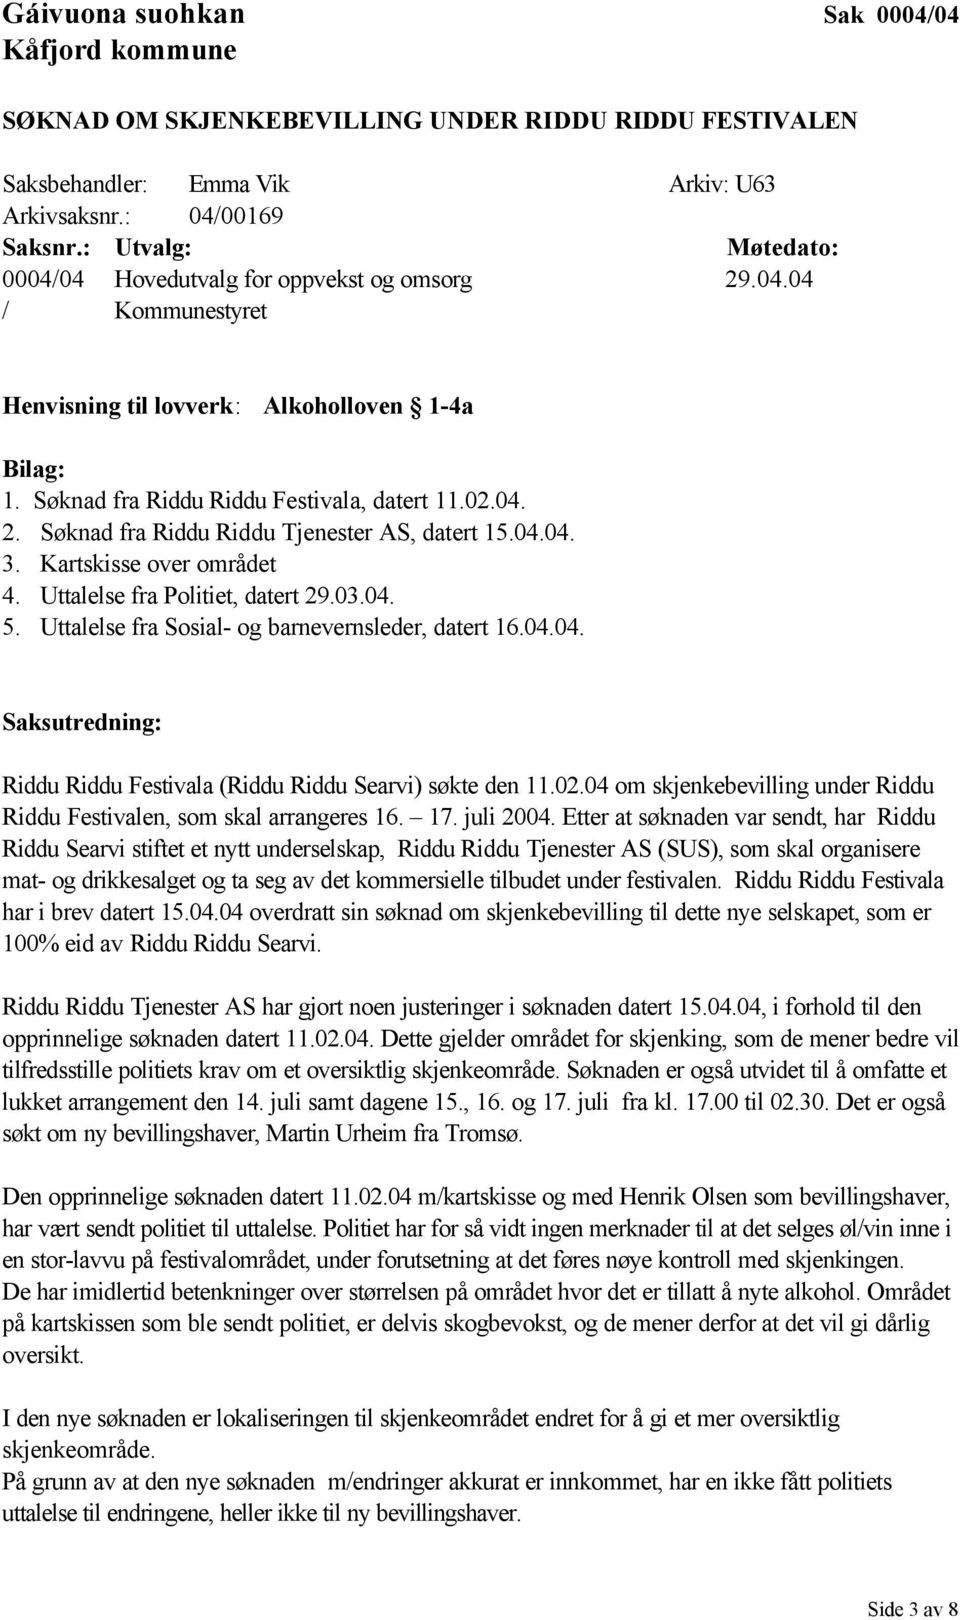 Uttalelse fra Sosial- og barnevernsleder, datert 16.04.04. Riddu Riddu Festivala (Riddu Riddu Searvi) søkte den 11.02.04 om skjenkebevilling under Riddu Riddu Festivalen, som skal arrangeres 16. 17.